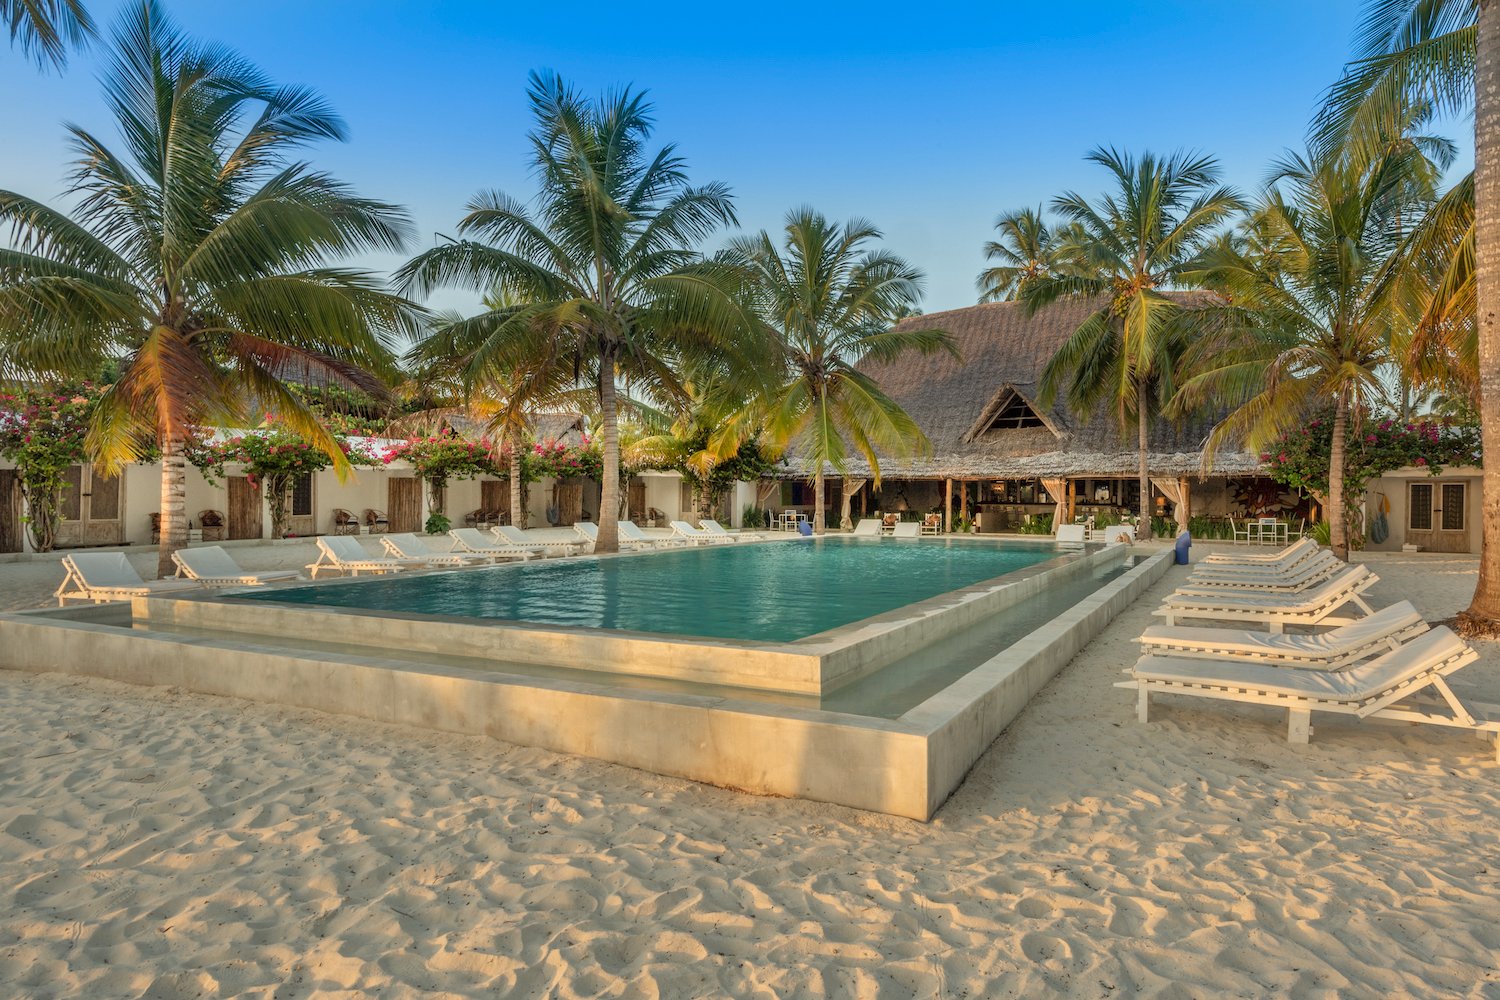 The Loop Beach Resort pool